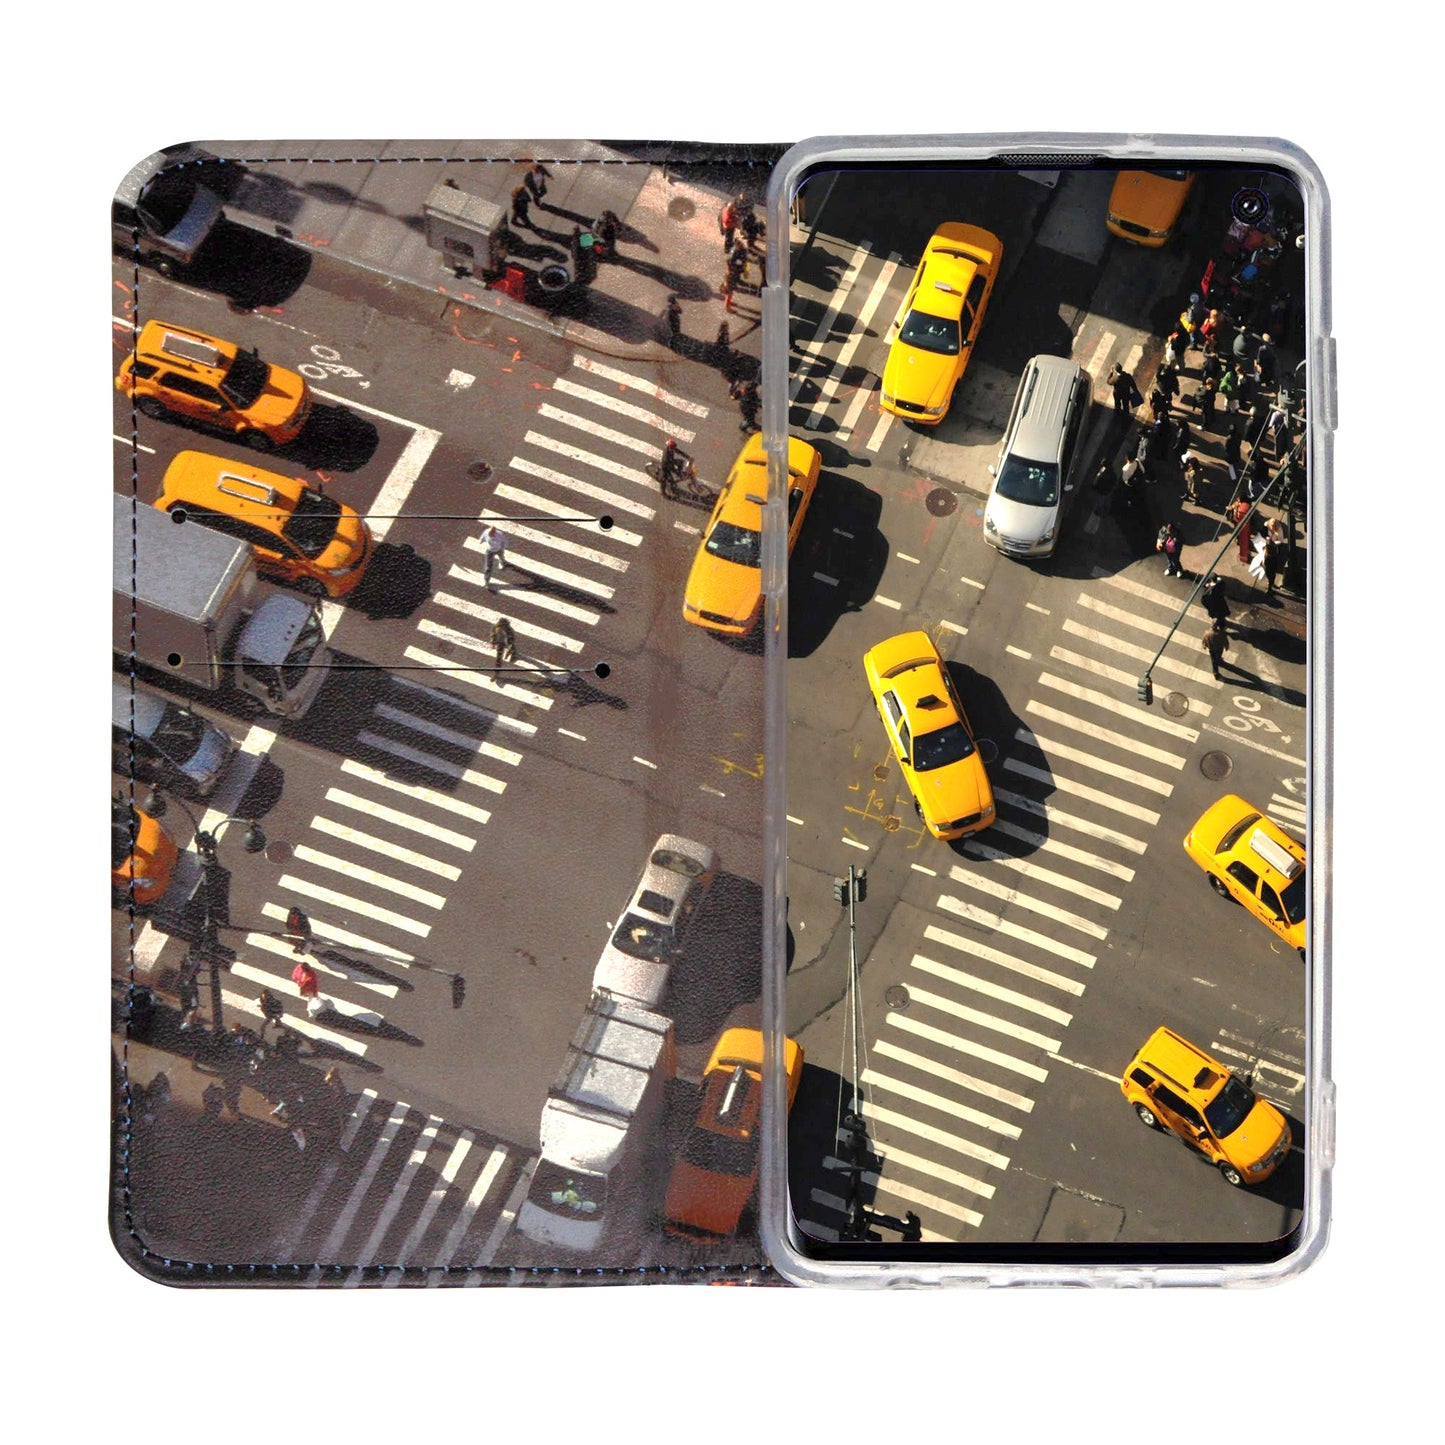 Coque panoramique New York City pour Samsung Galaxy S10E